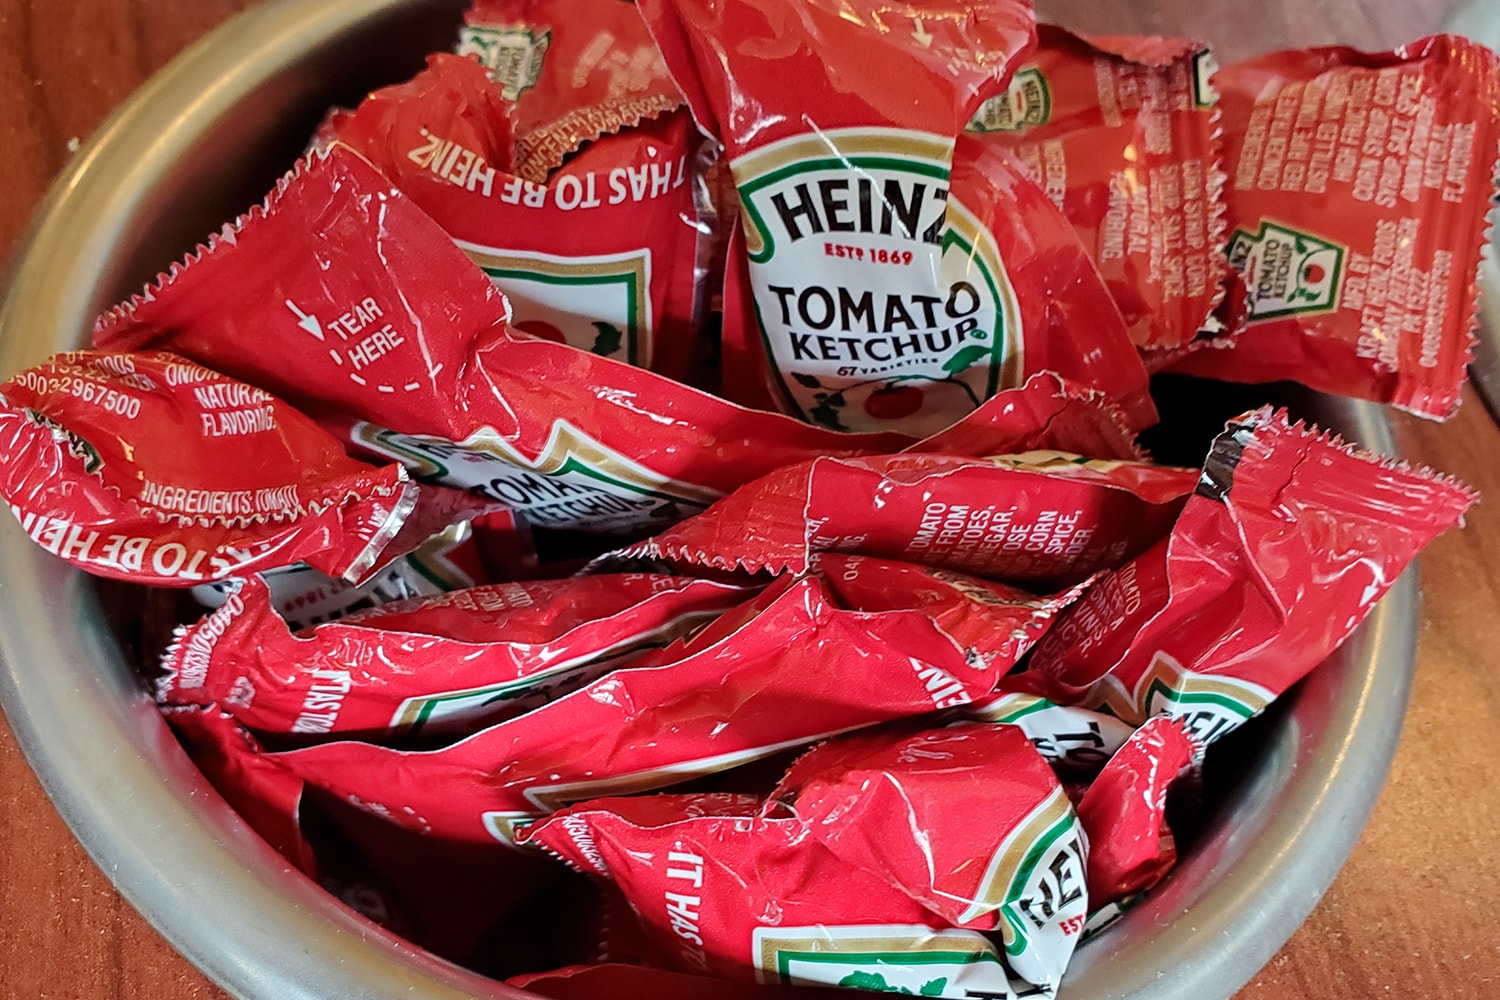 全米でハインツの個袋タイプのトマトケチャップ不足が深刻化 Heinz Ketchup Packet Shortage Announcement COVID-19 Info